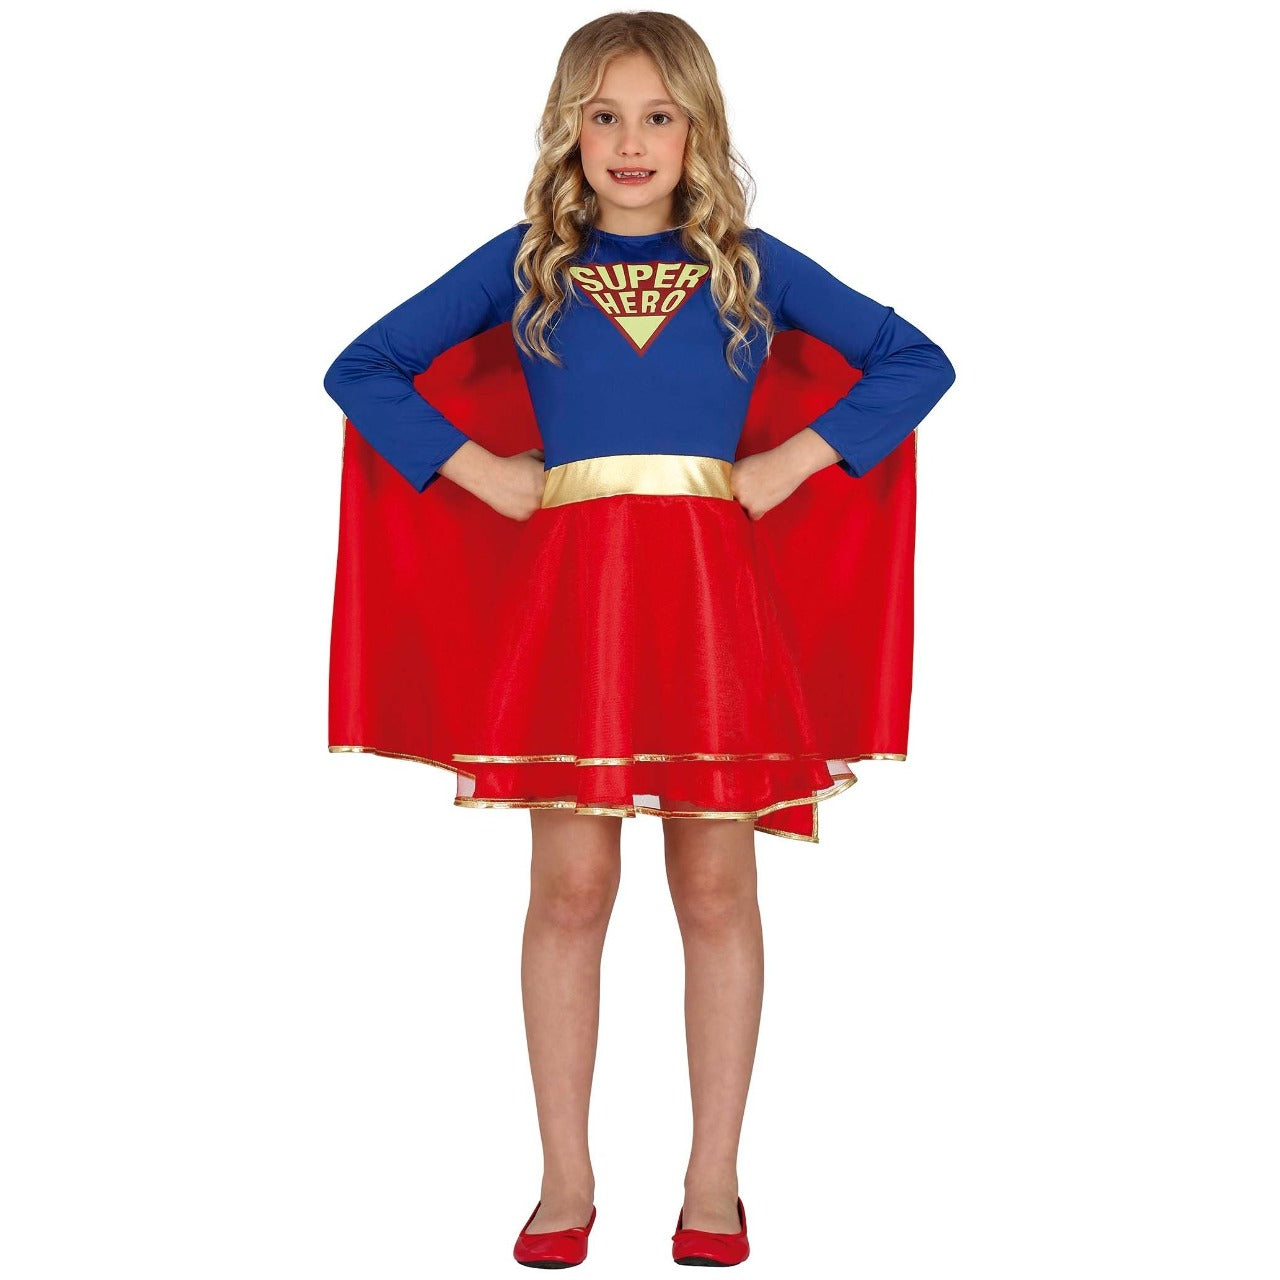 Acquista: Costumi di gruppo da Superman e Supergirl